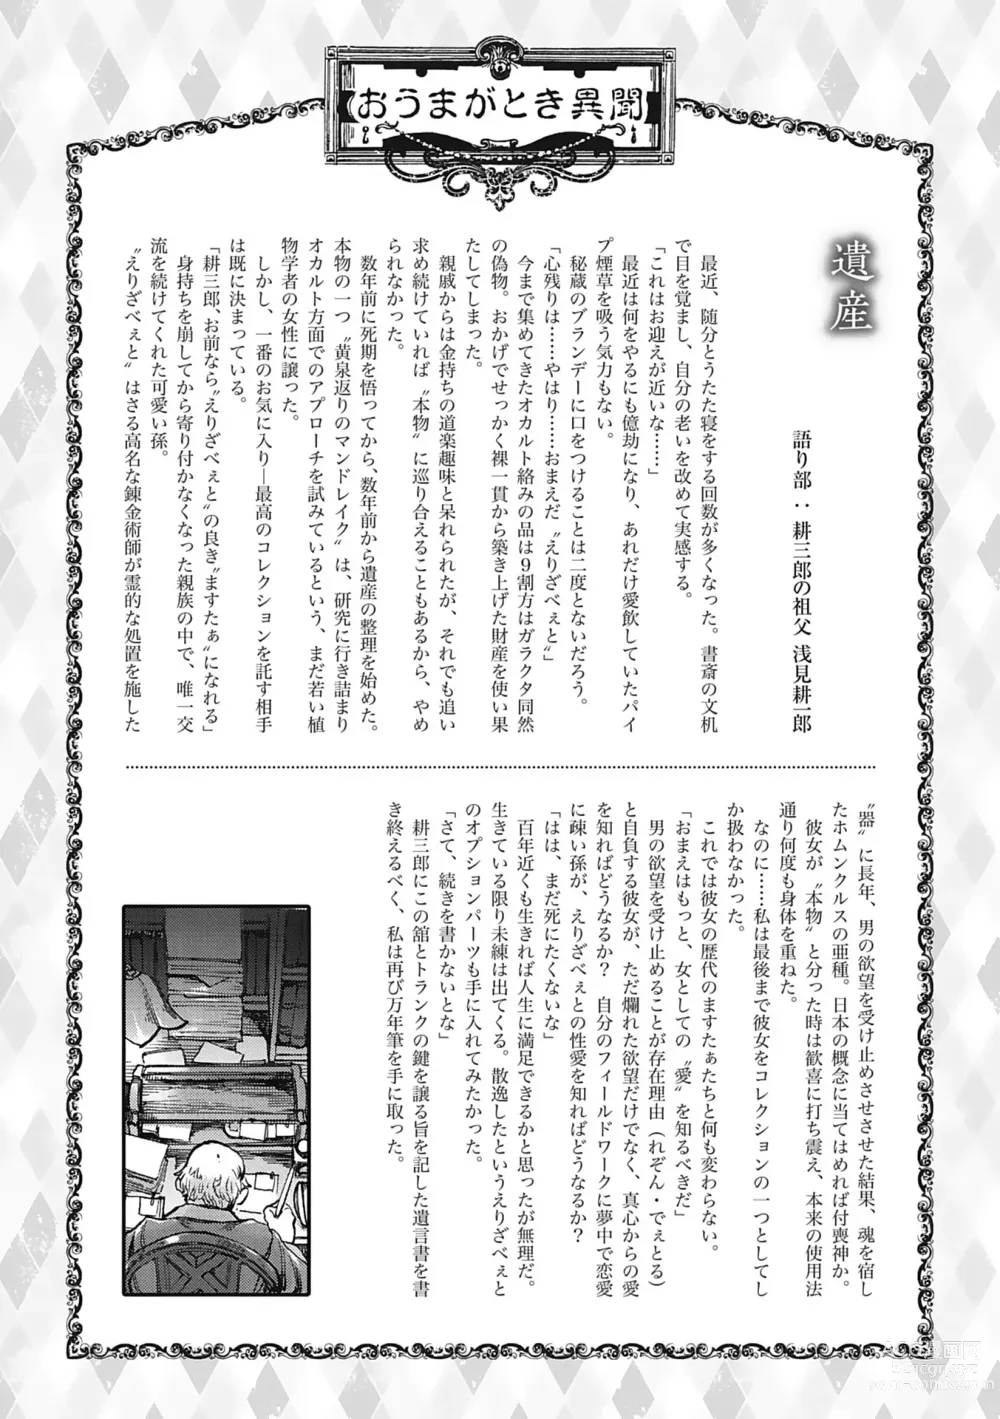 Page 205 of manga Oumagatoki - Ishu Konin Roman Tan -